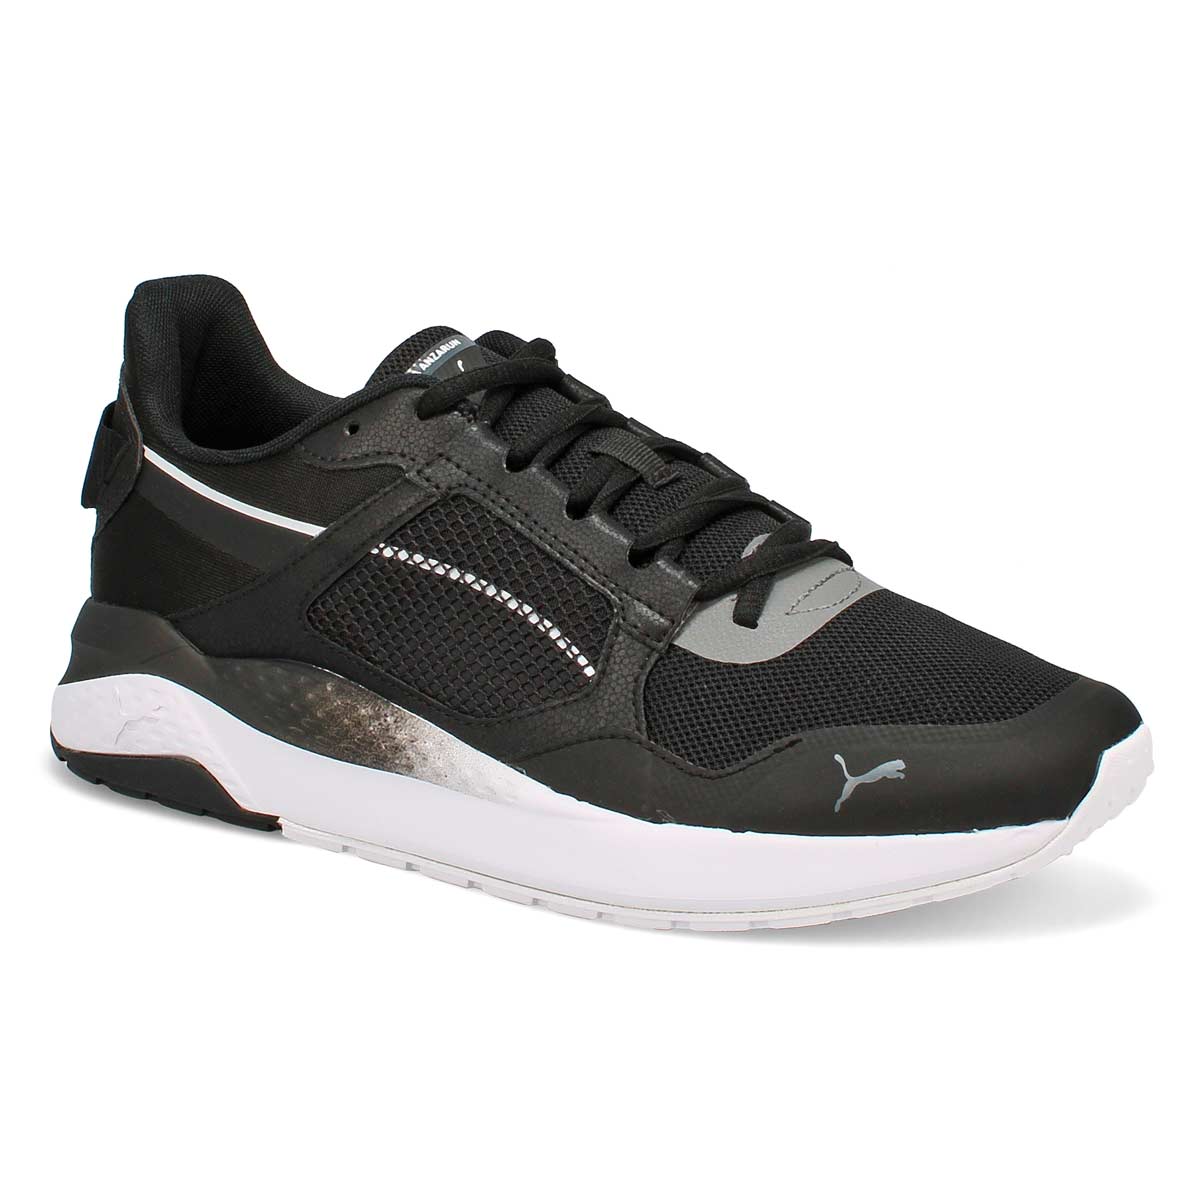 Puma Men's Anzarun Grid Sneaker - Black/White | SoftMoc.com